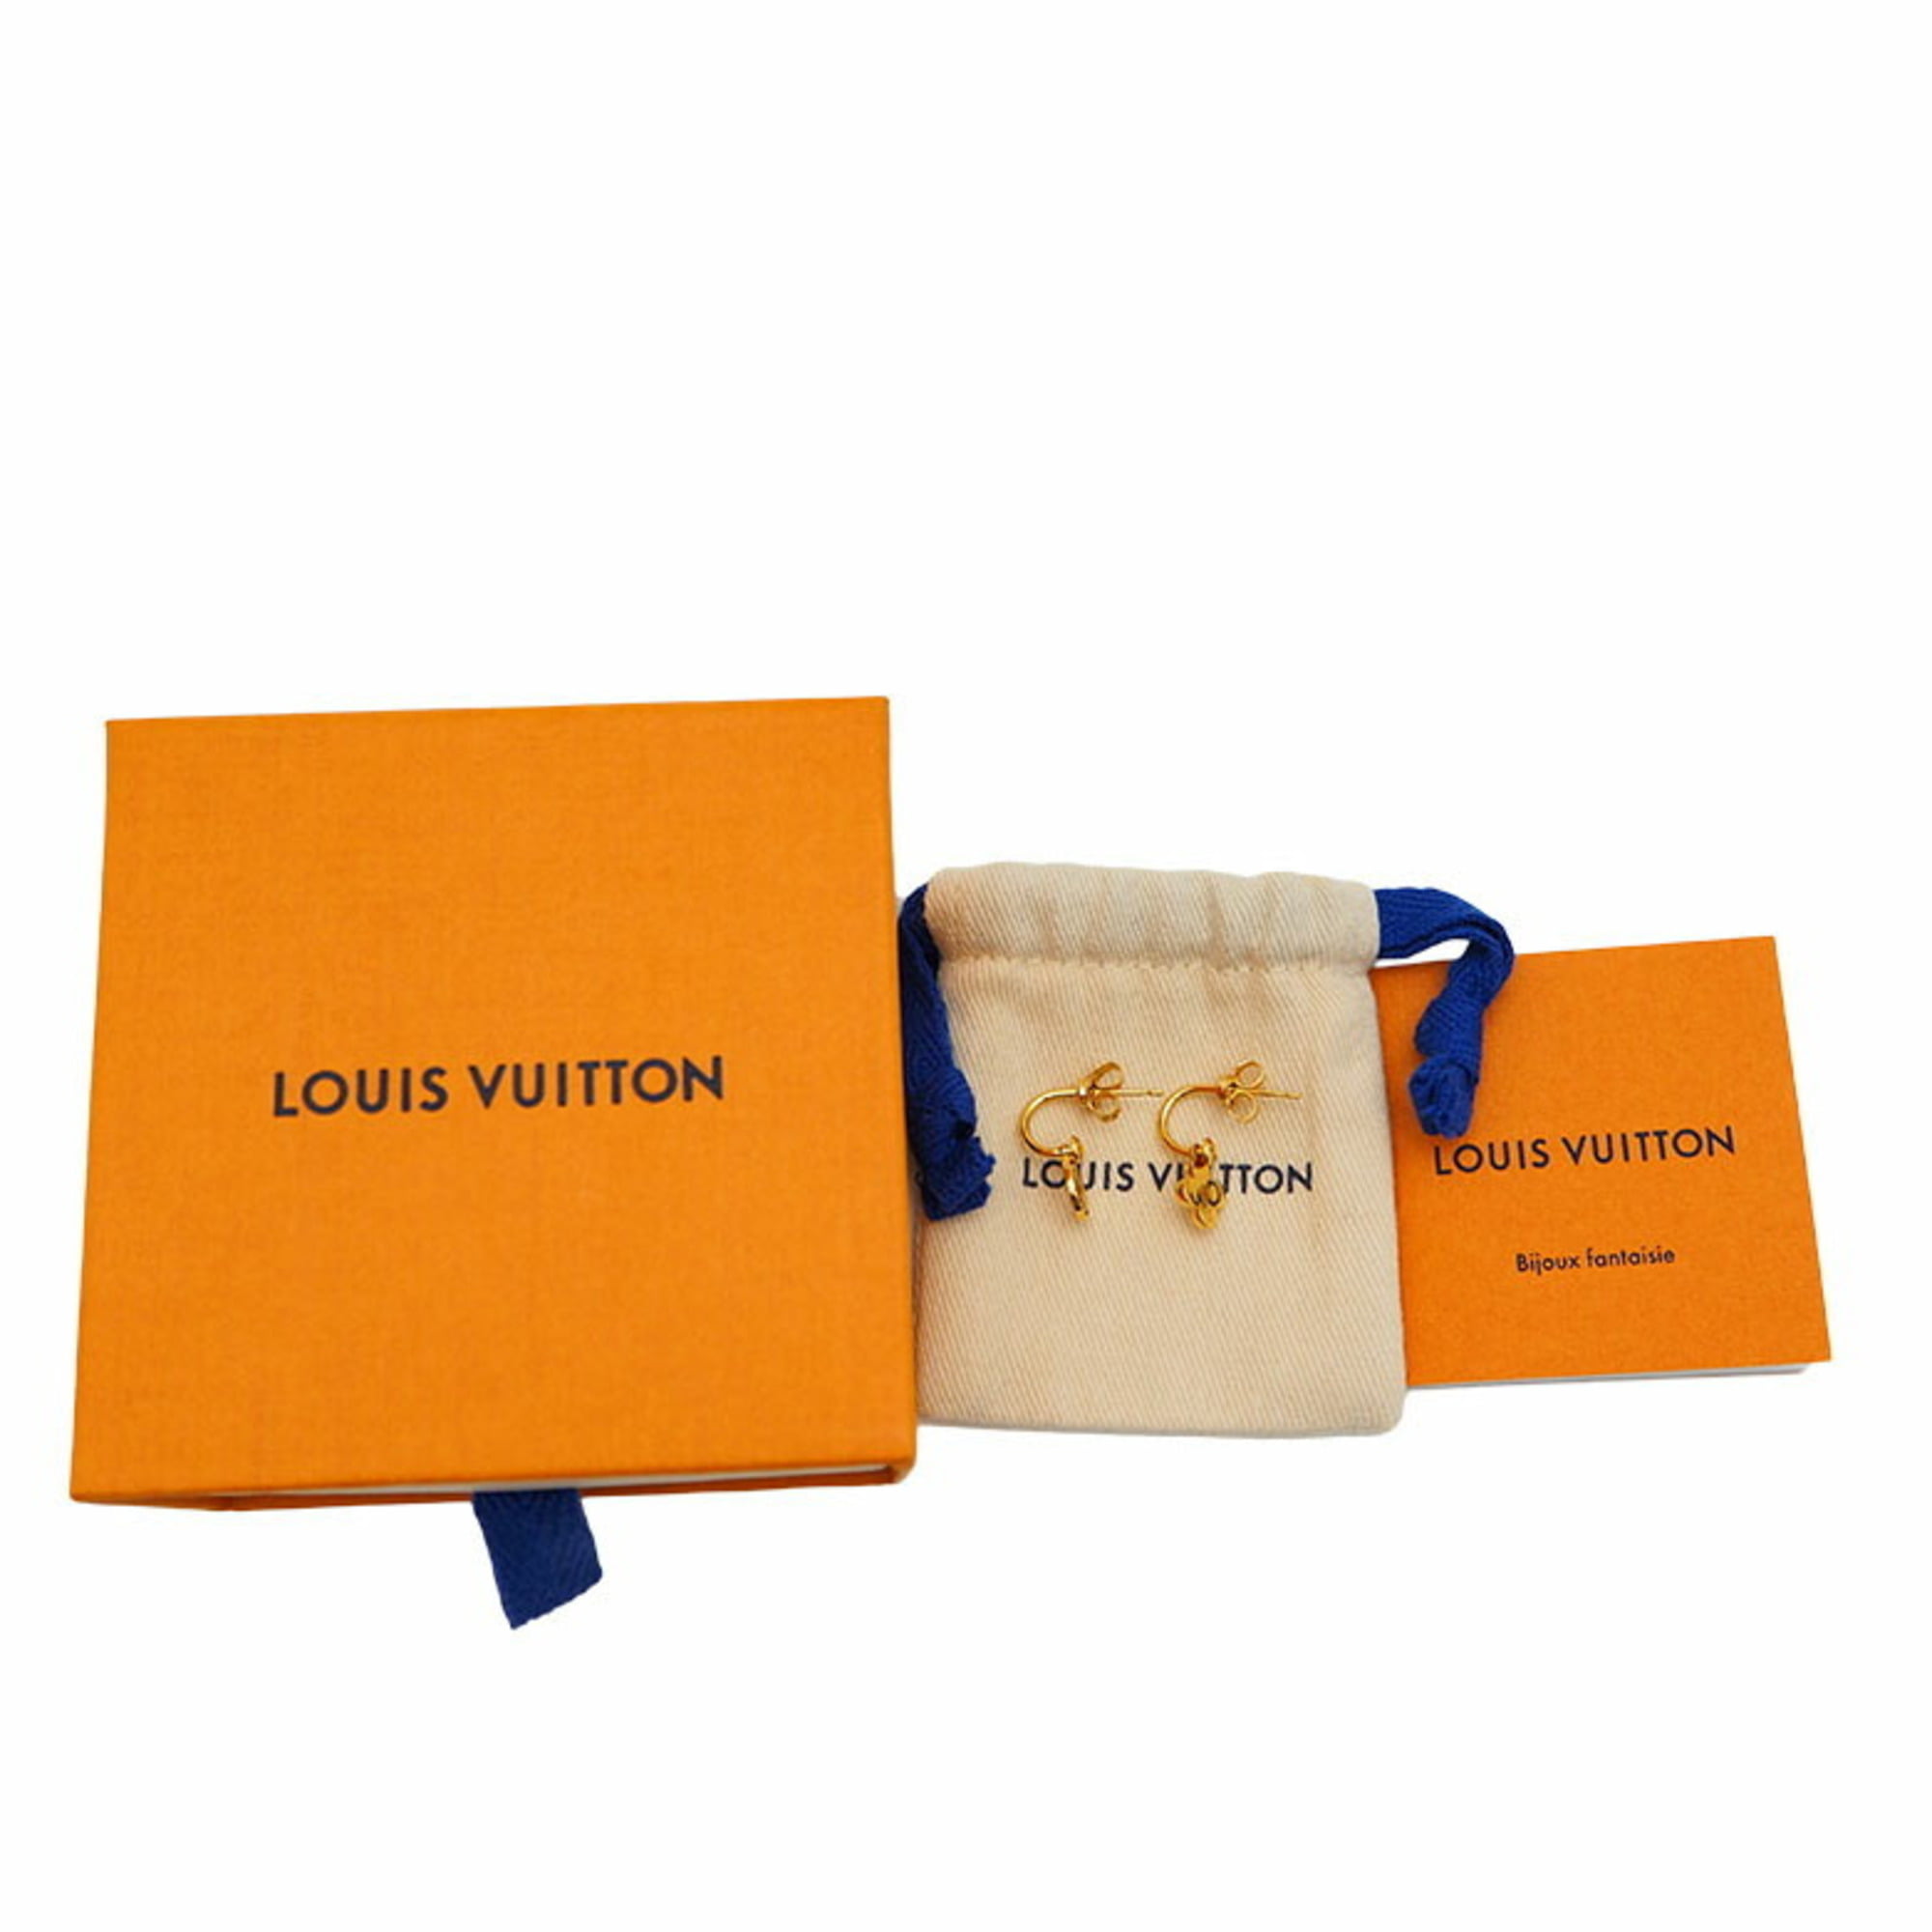 LOUIS VUITTON Earrings Bookreille Gold Pink Blue Flower Heart Rare France